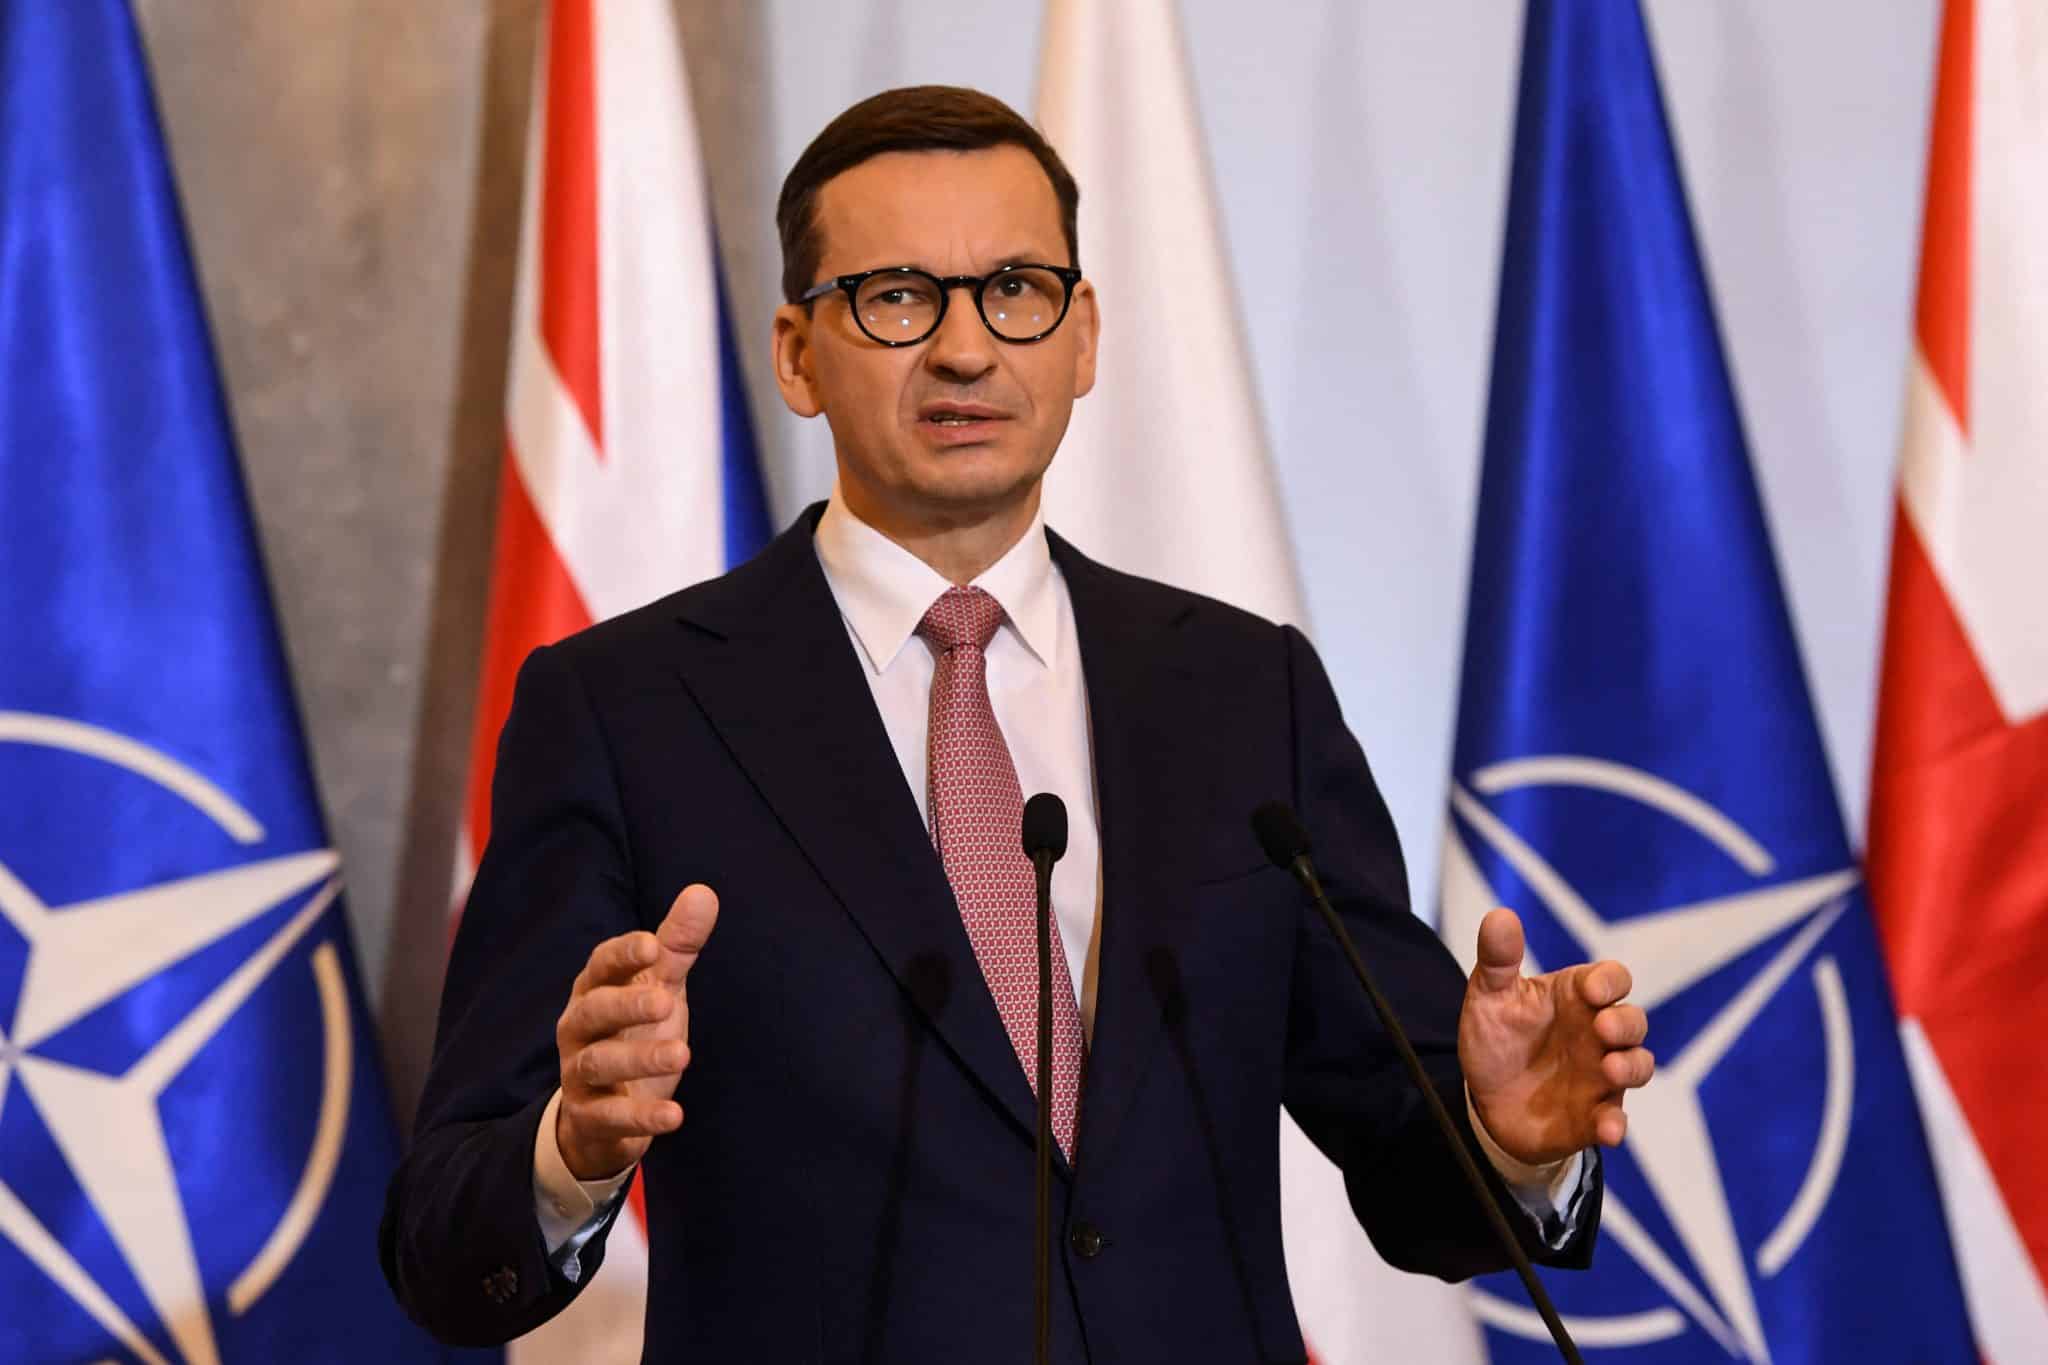 Mateusz-Morawiecki-lengyel-miniszterelnok-valasztas-2022-fidesz-orosz-ukran-haboru